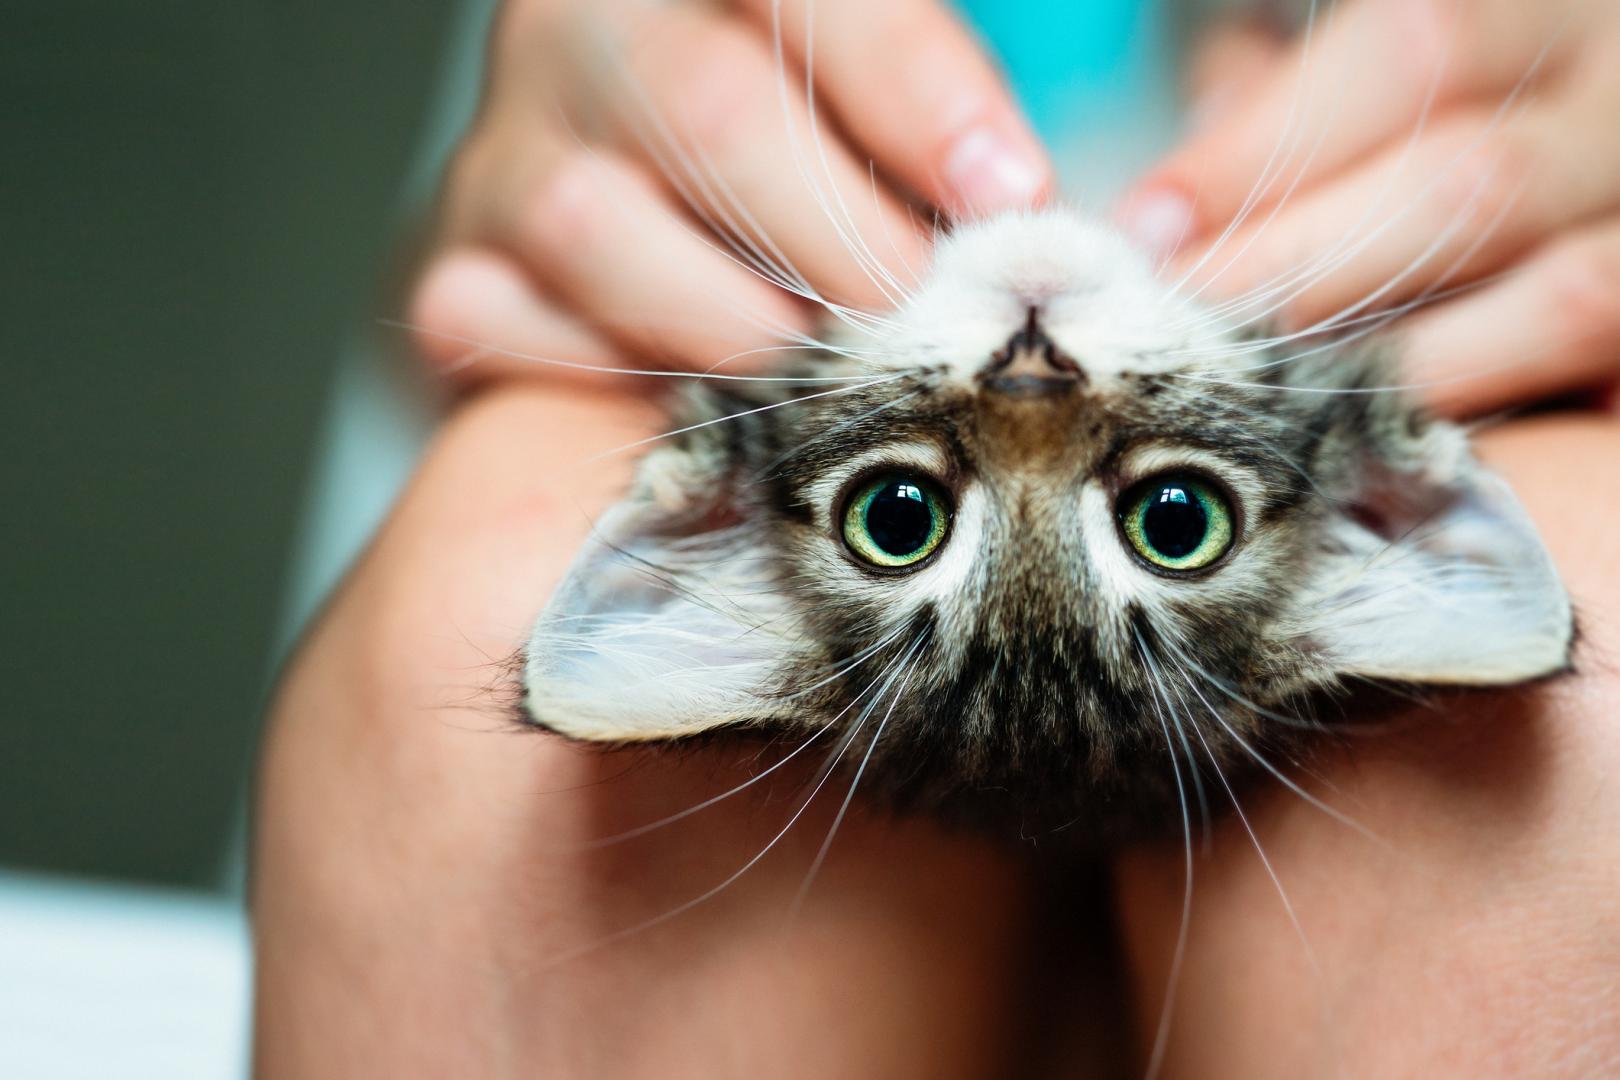  Valóban gyógyít a macskadorombolás?